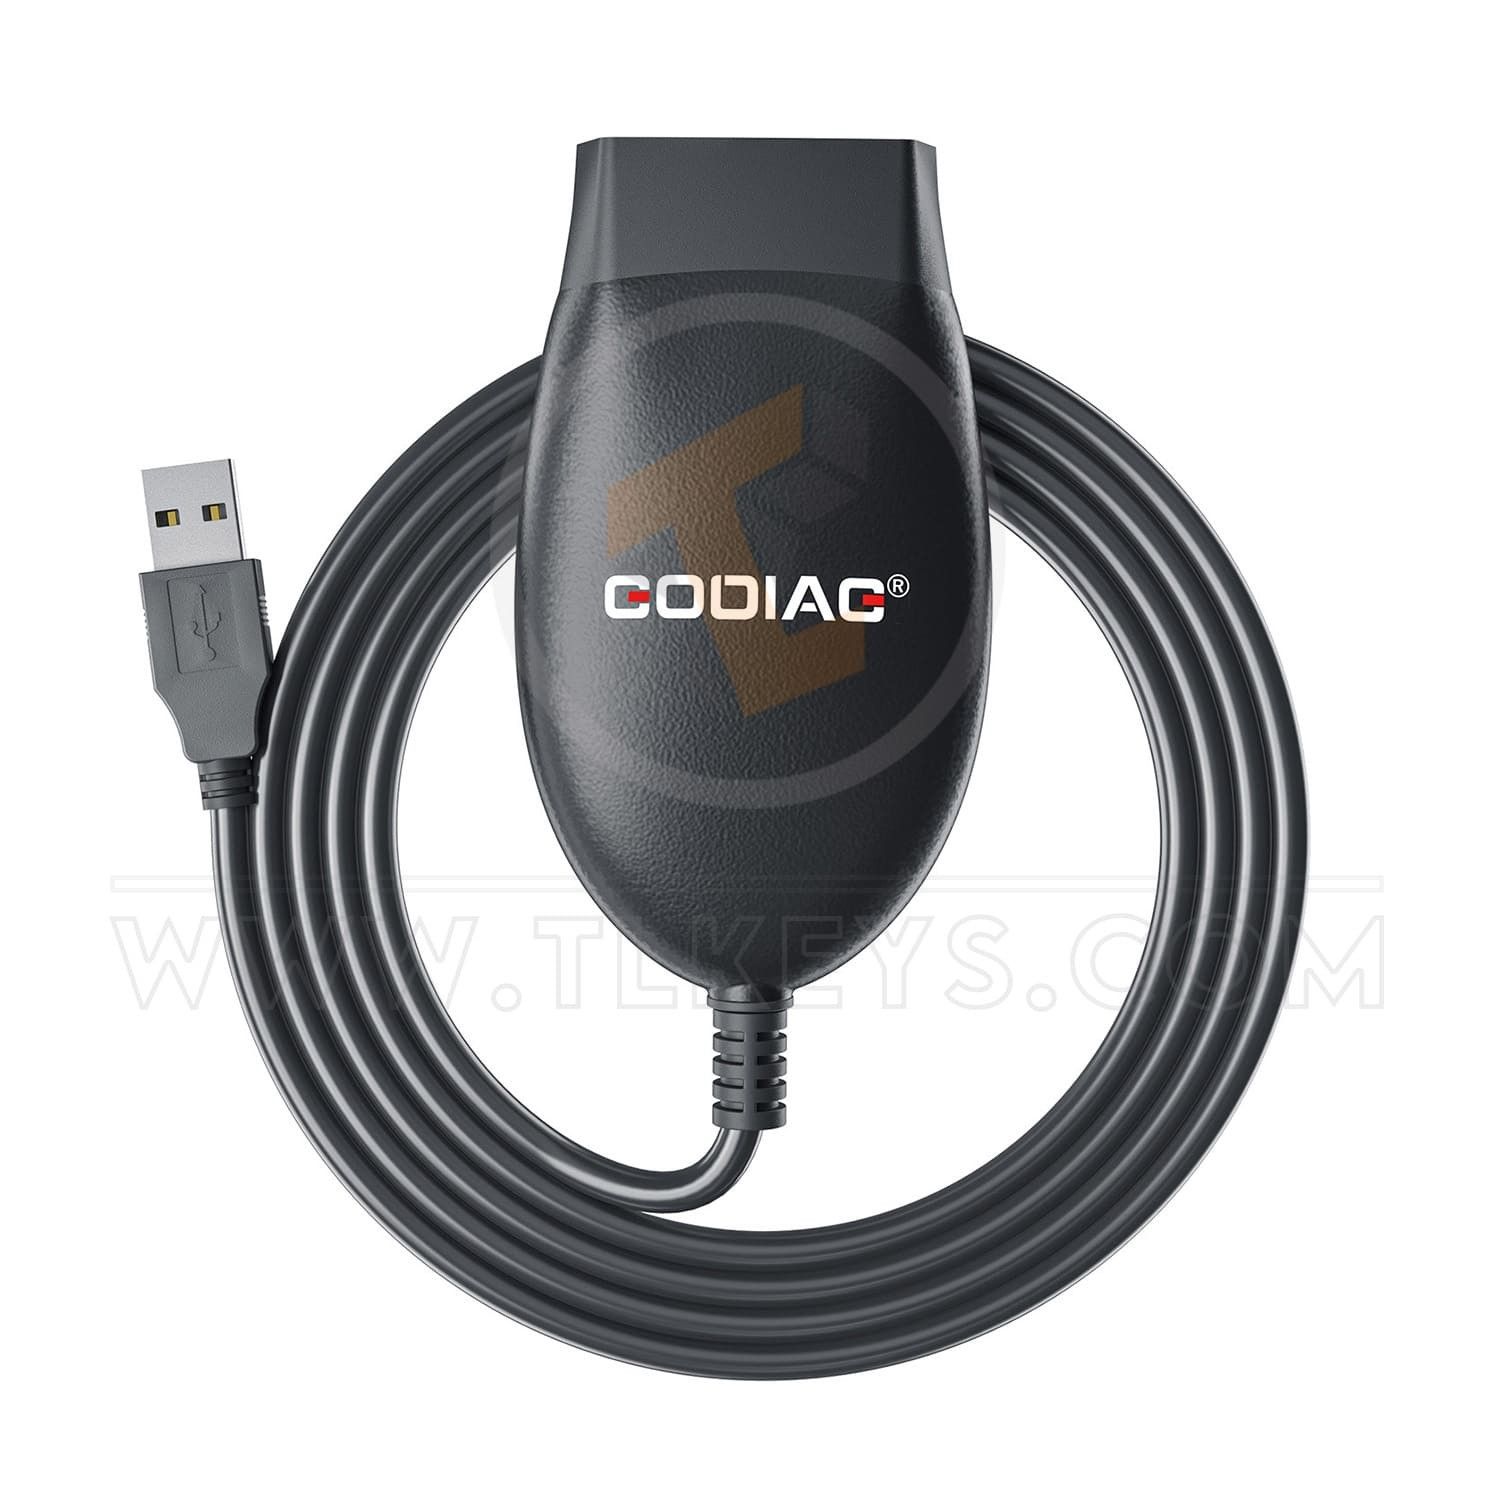 GODIAG GD101 J2534 Passthru Diagnostic Cable Key Programming Diagnostics Tools